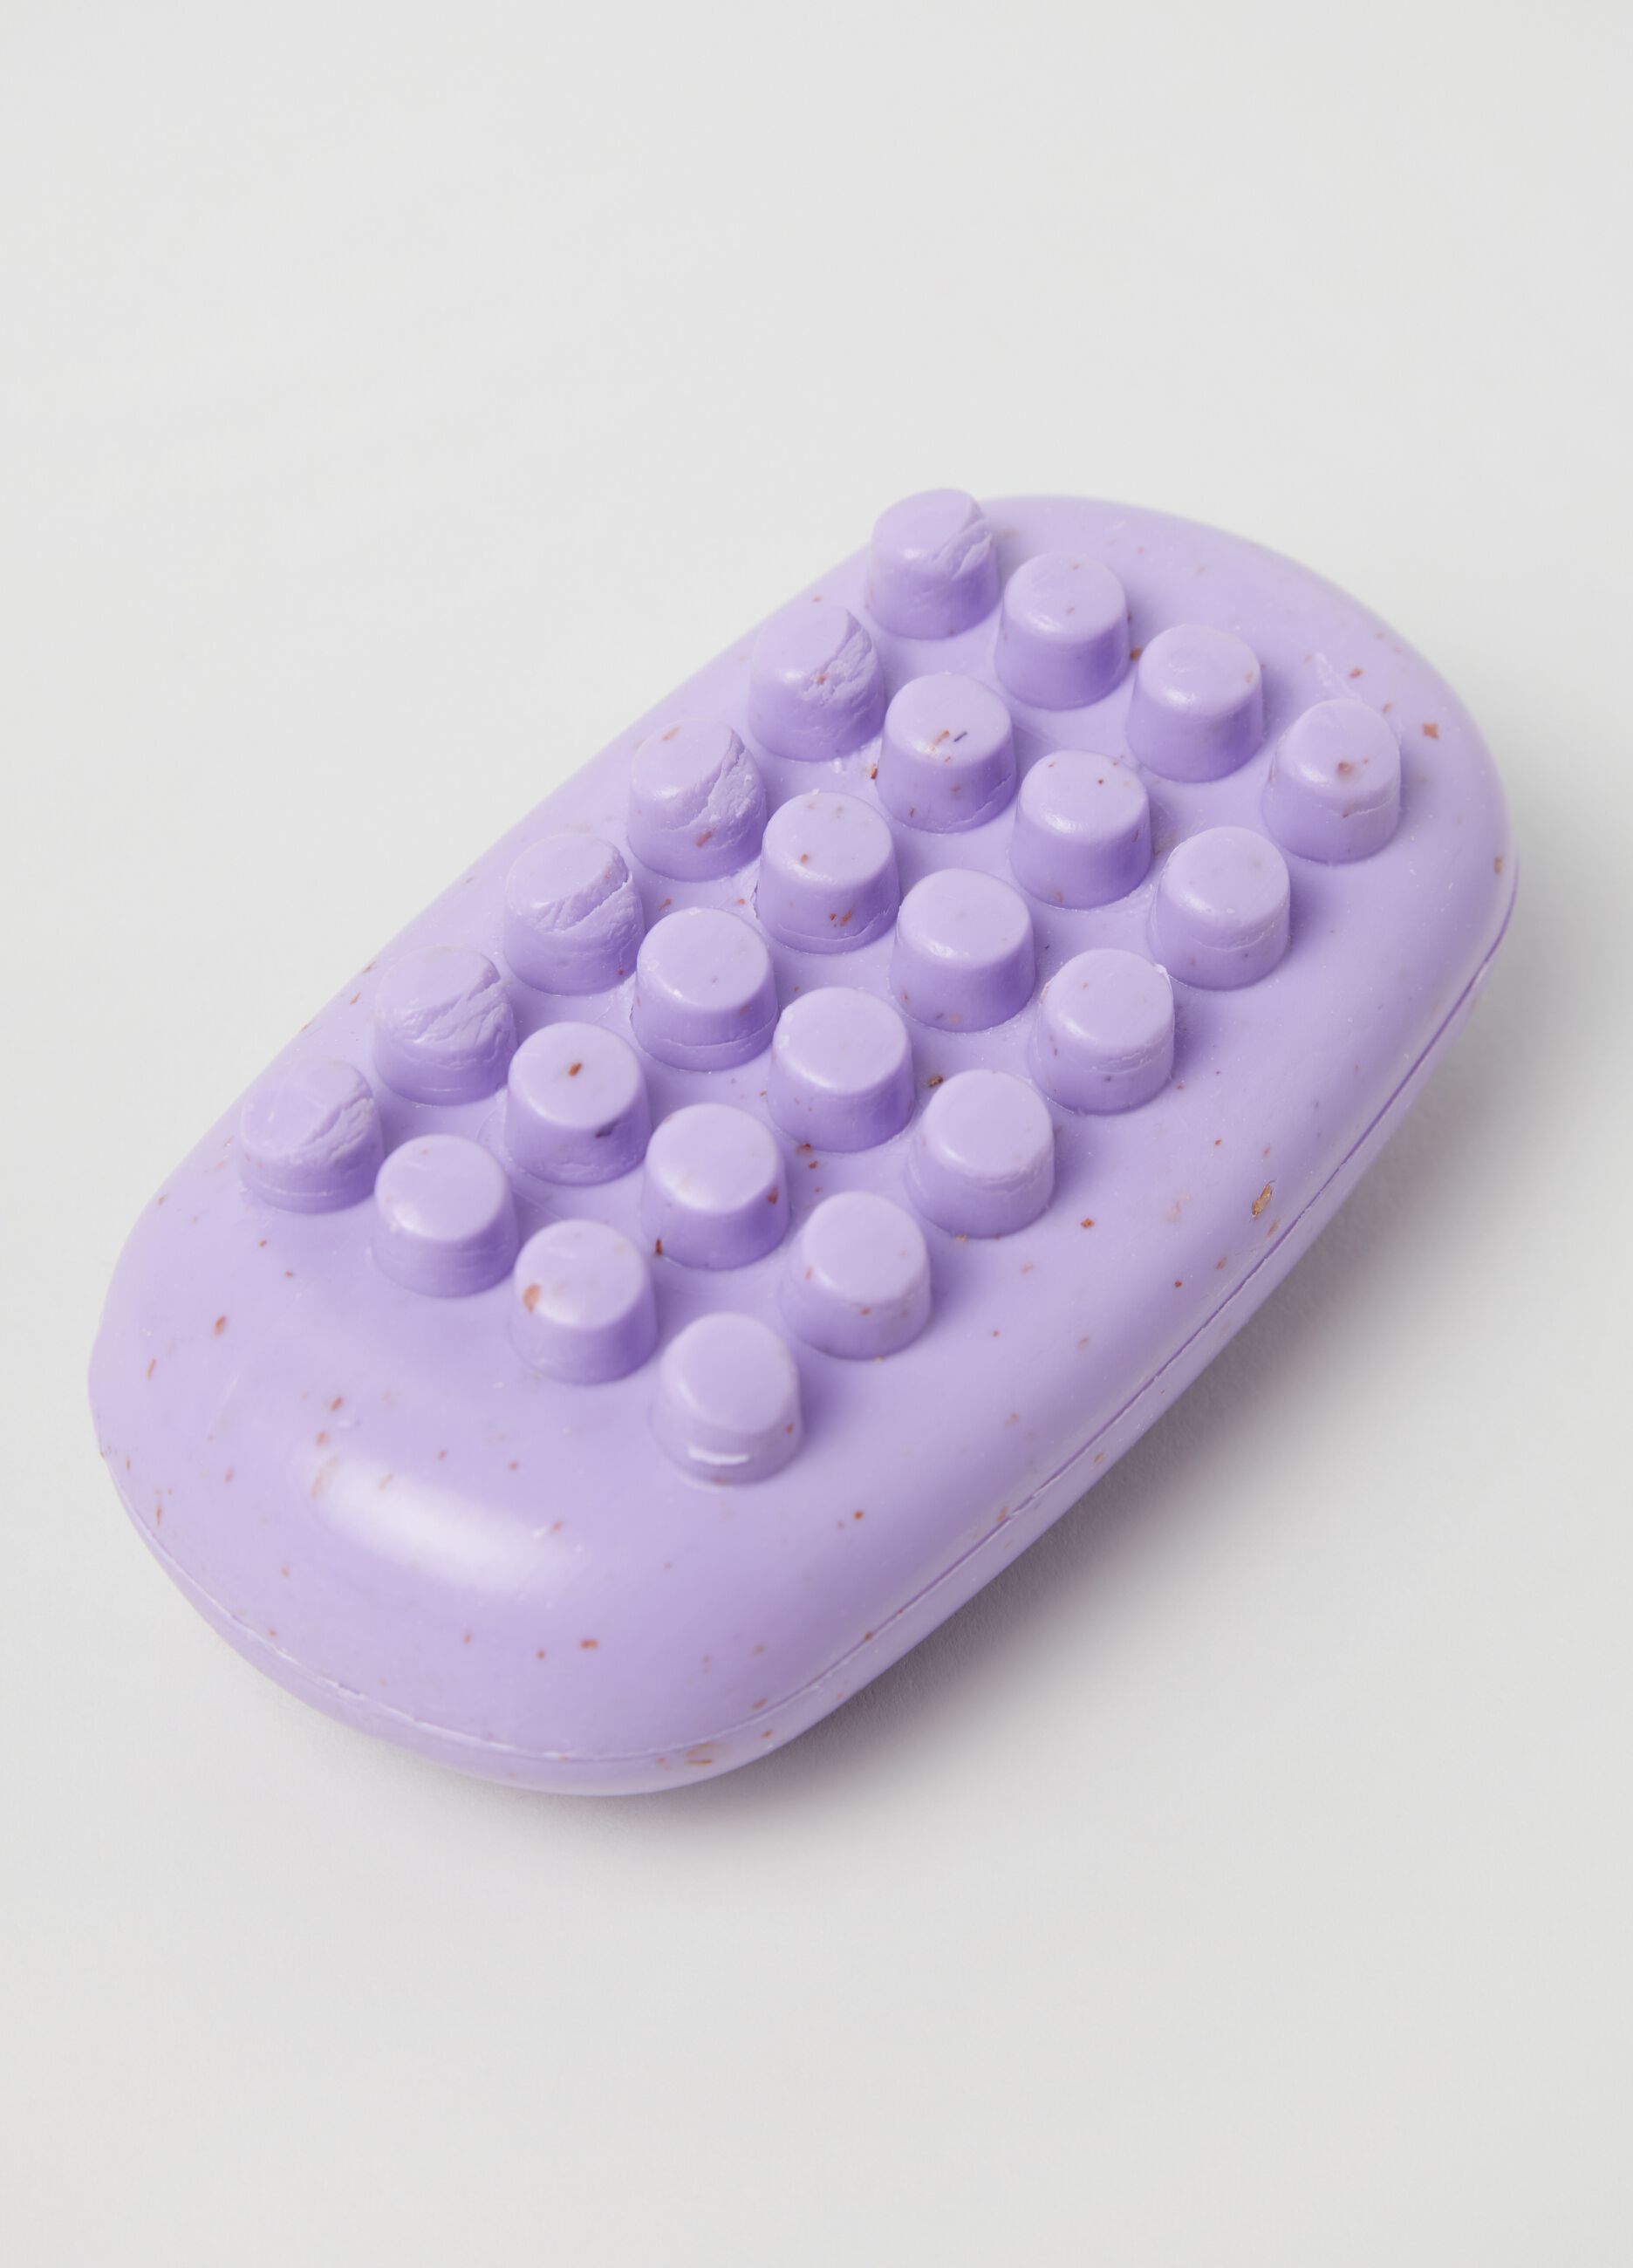 Lavender soap scrub